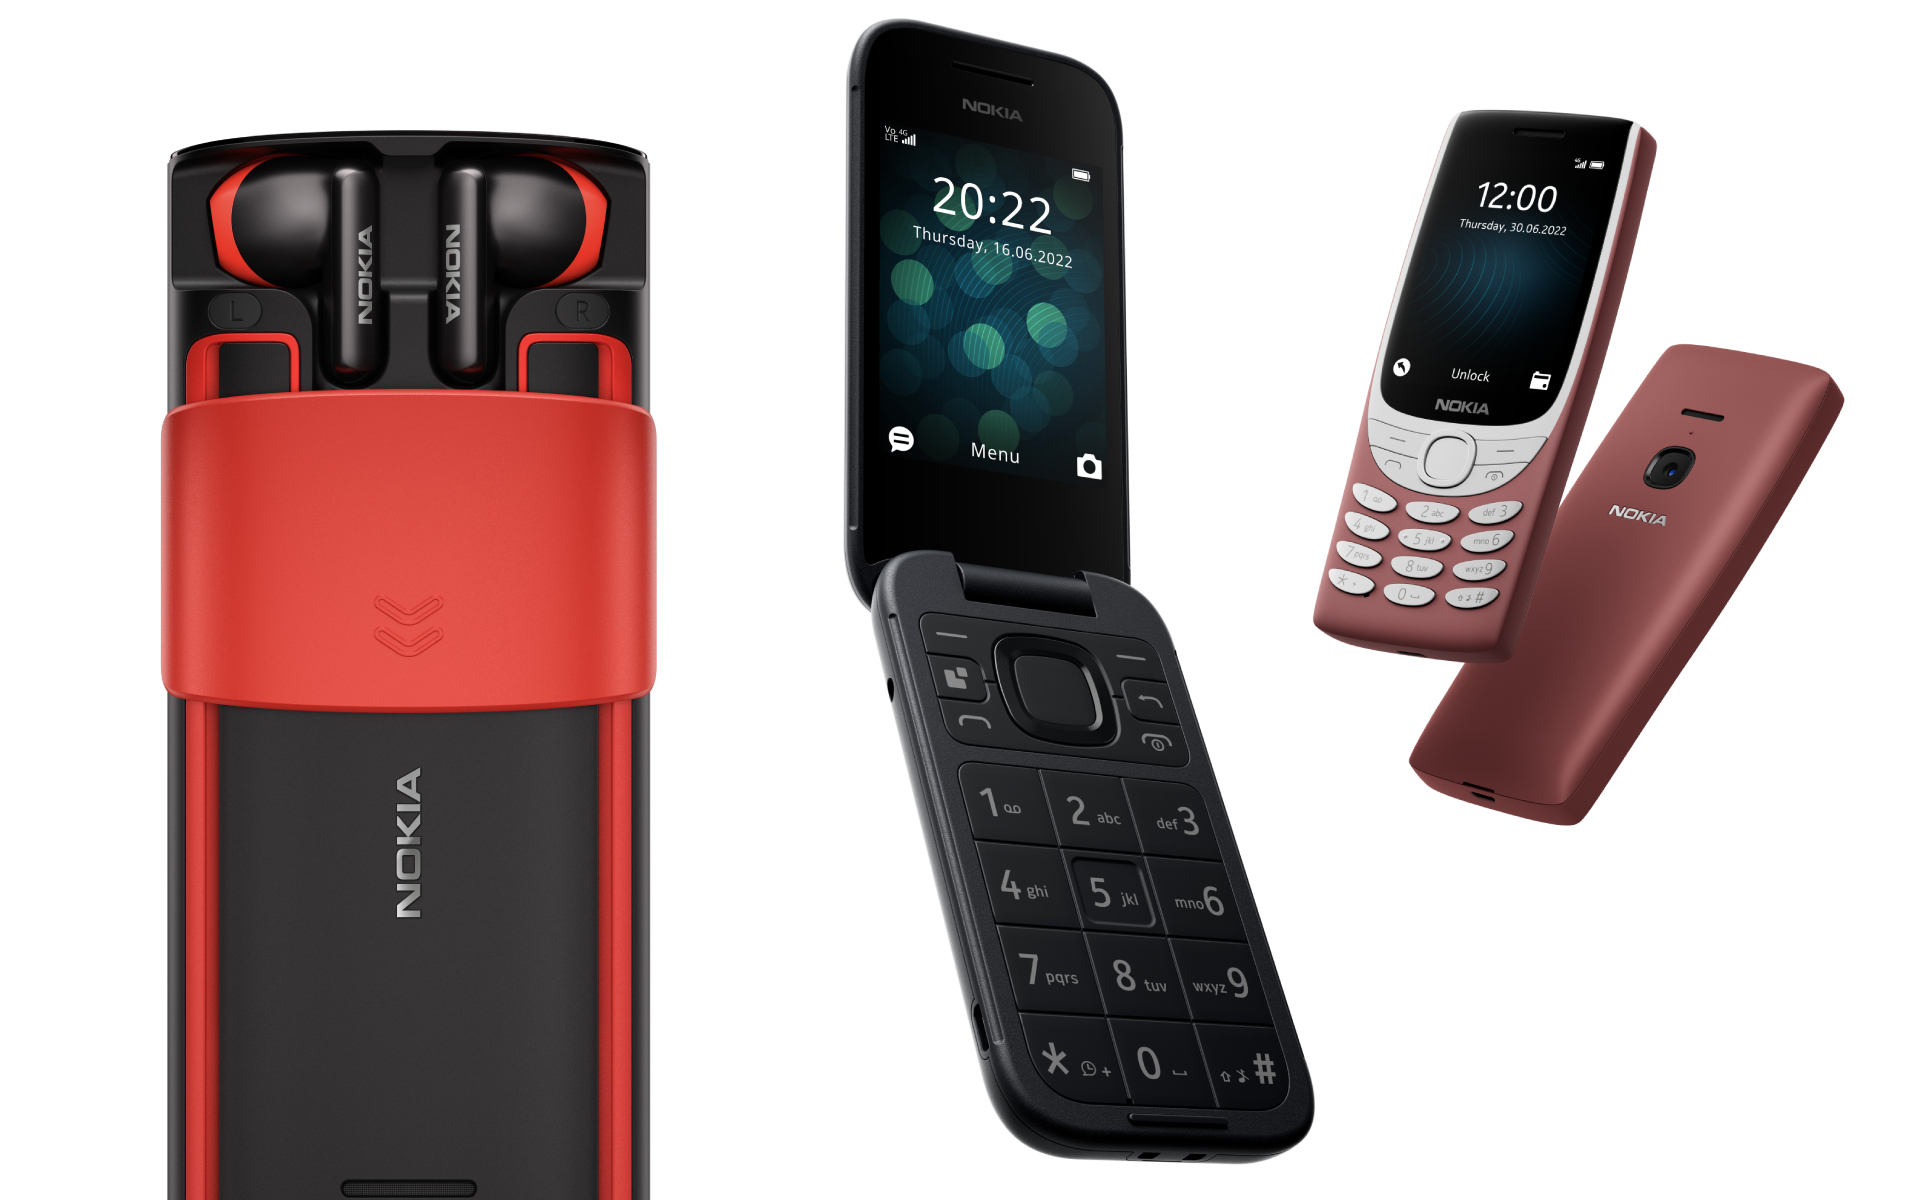 Novinky Nokia 8210 4G a Nokia 2660 Flip míří na český trh [aktualizováno]